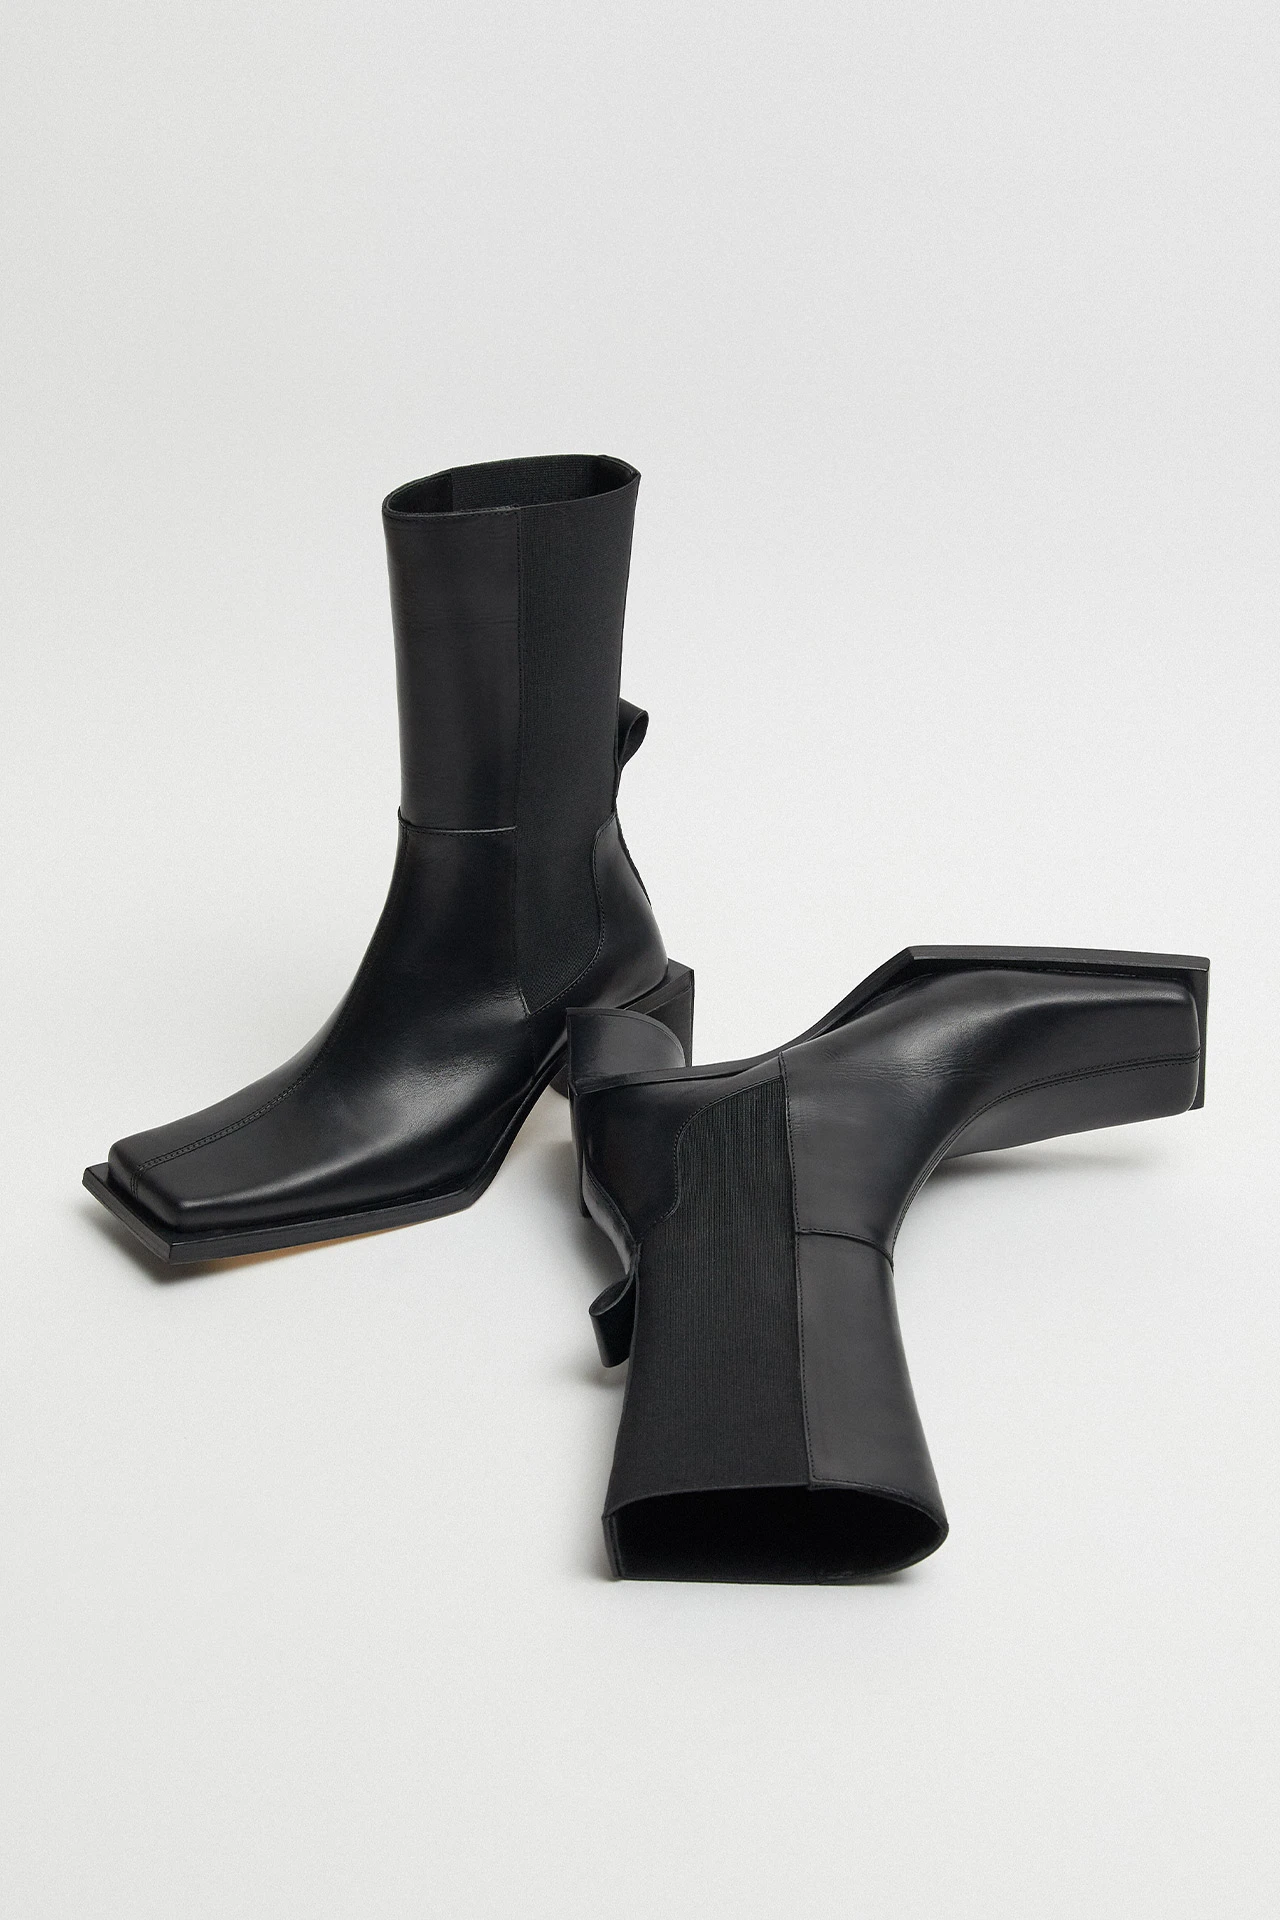 Miista-minnie-black-boots-02